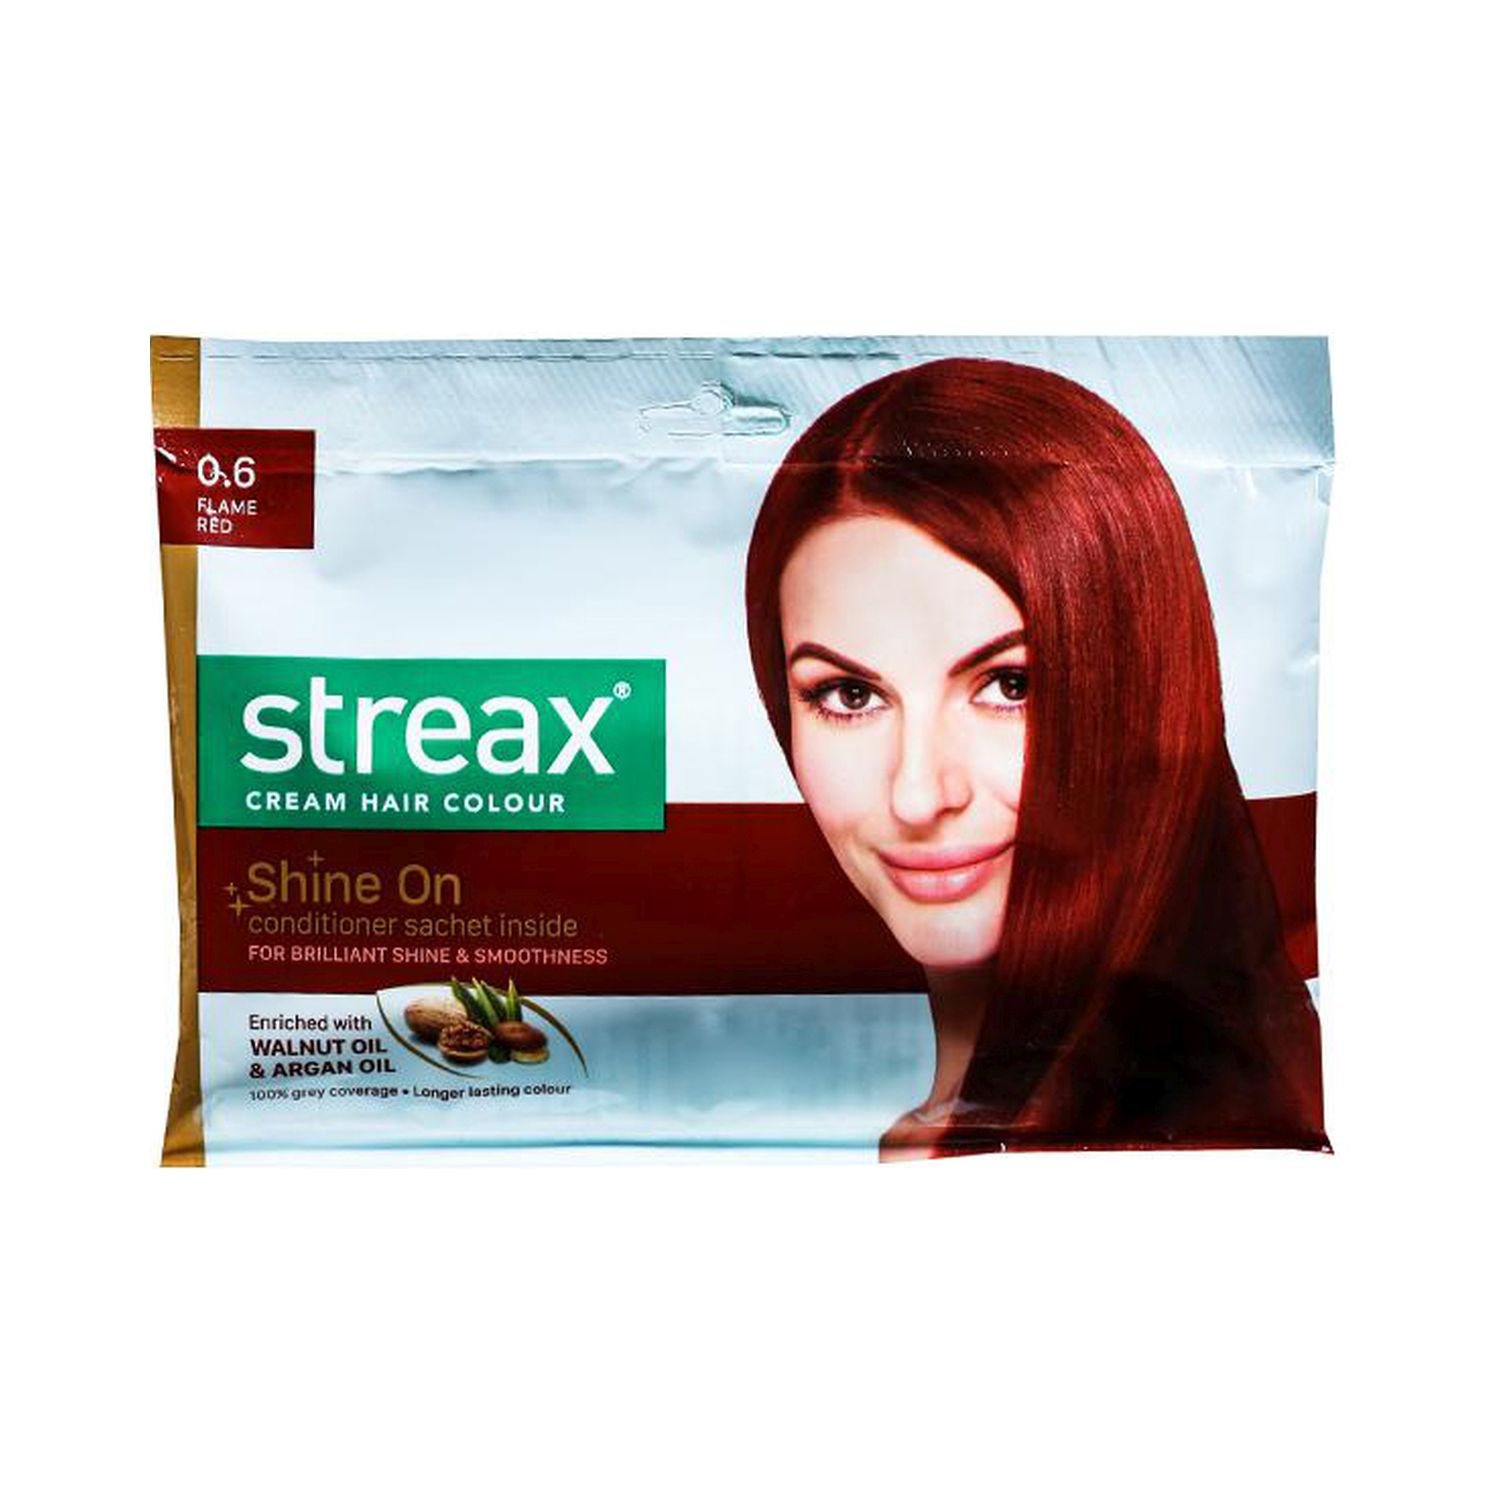 Streax Hair Colour - 0.6 Flame Red (25gm+20ml)